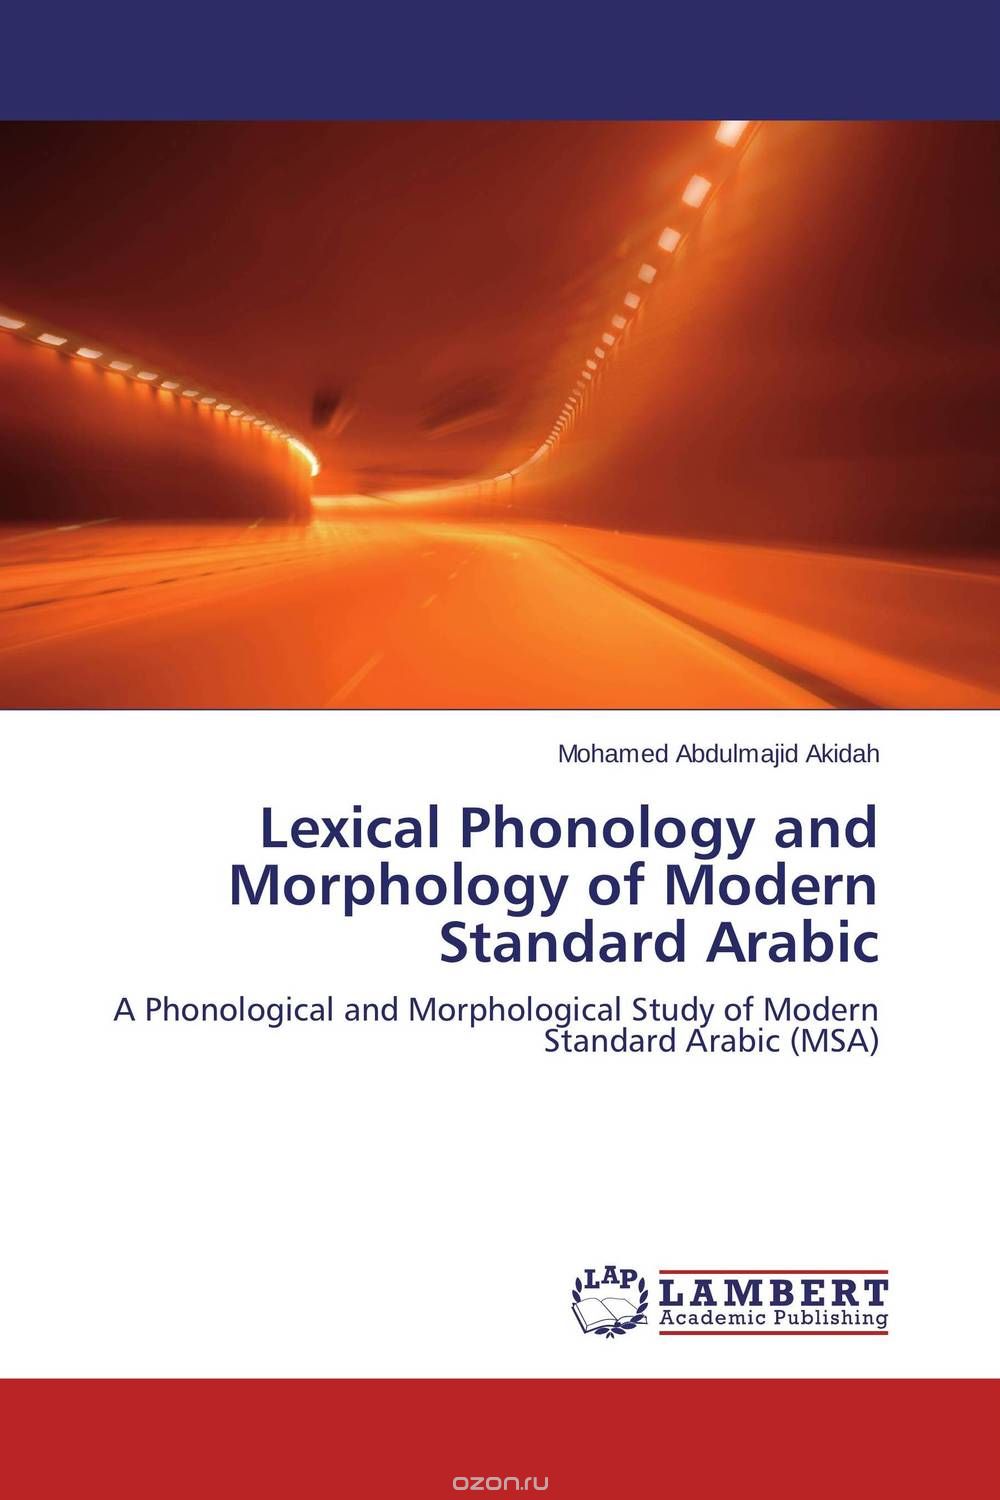 Скачать книгу "Lexical Phonology and Morphology of Modern Standard Arabic"